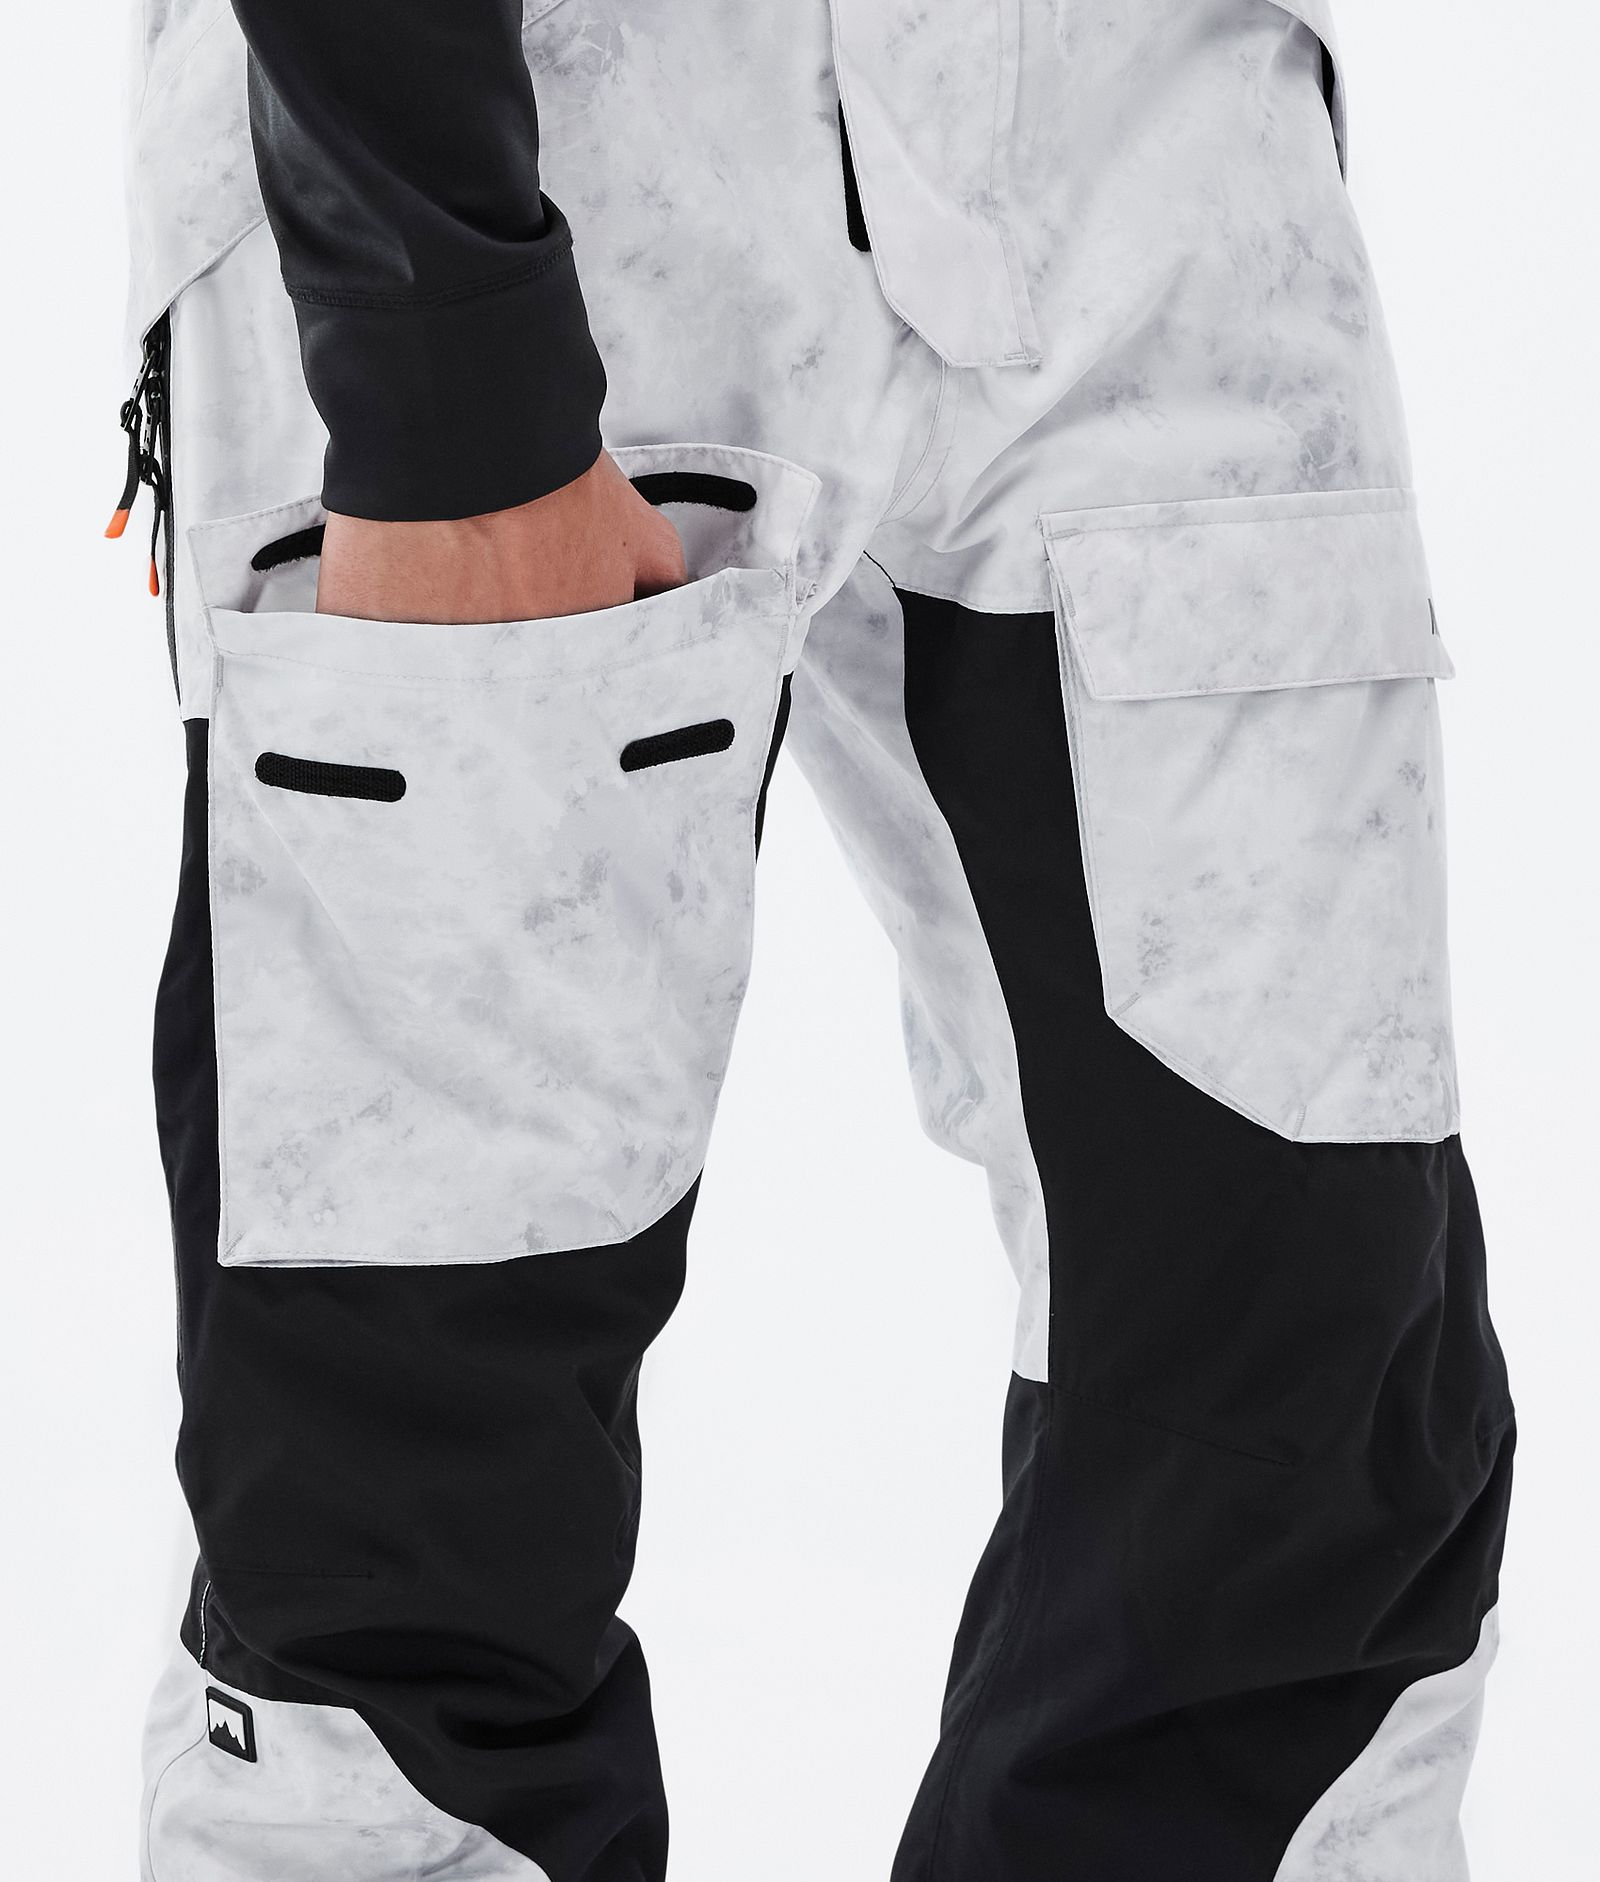 Fawk Kalhoty na Snowboard Pánské White Tiedye